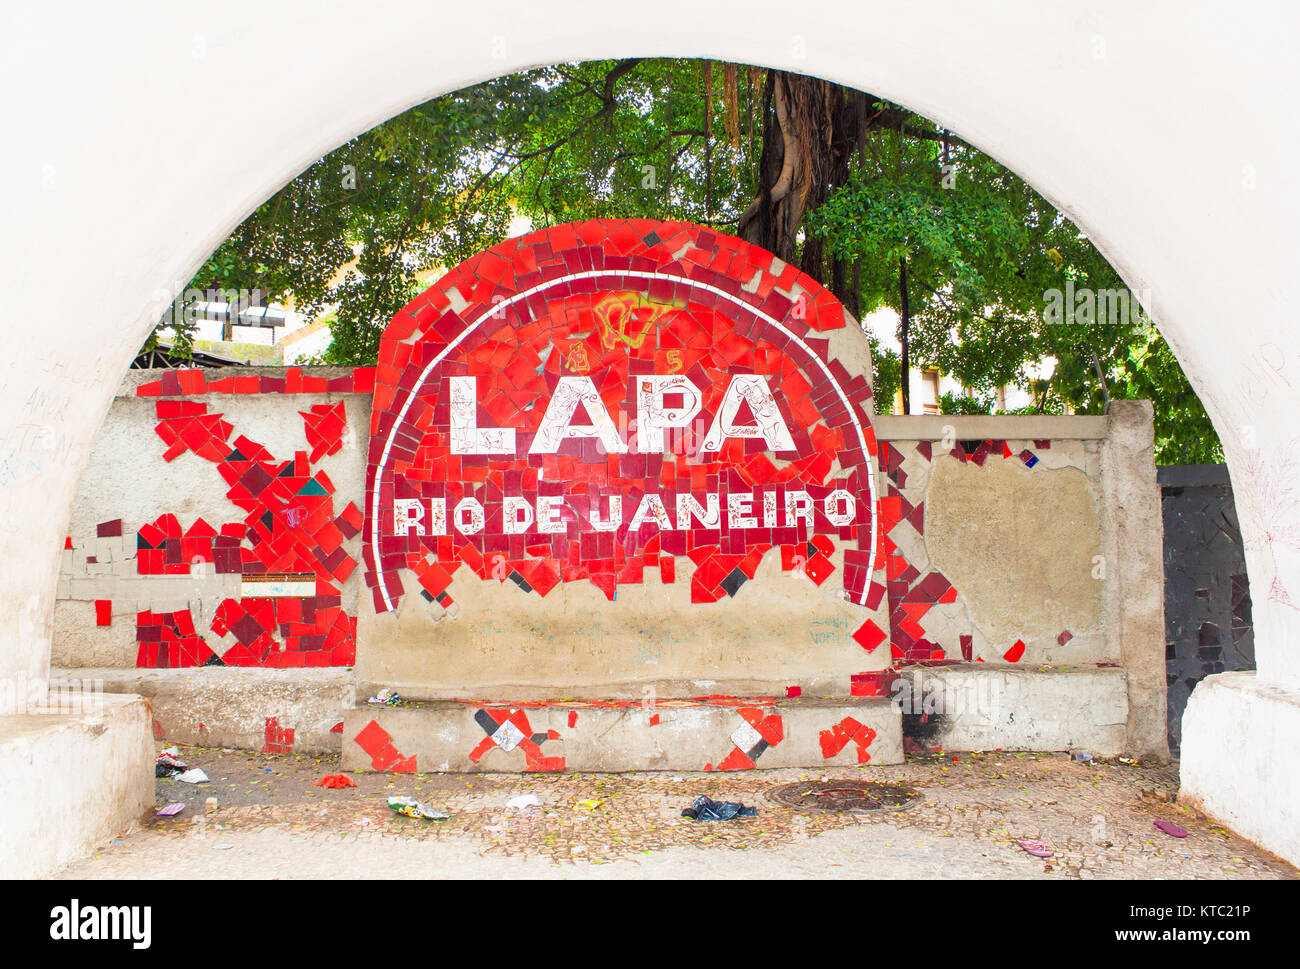 RIO DE JANEIRO - le 23 avril 2015 : passage Pablic en Lapa trimestre le 23 avril 2015, Rio de Janeiro, Brésil. Banque D'Images